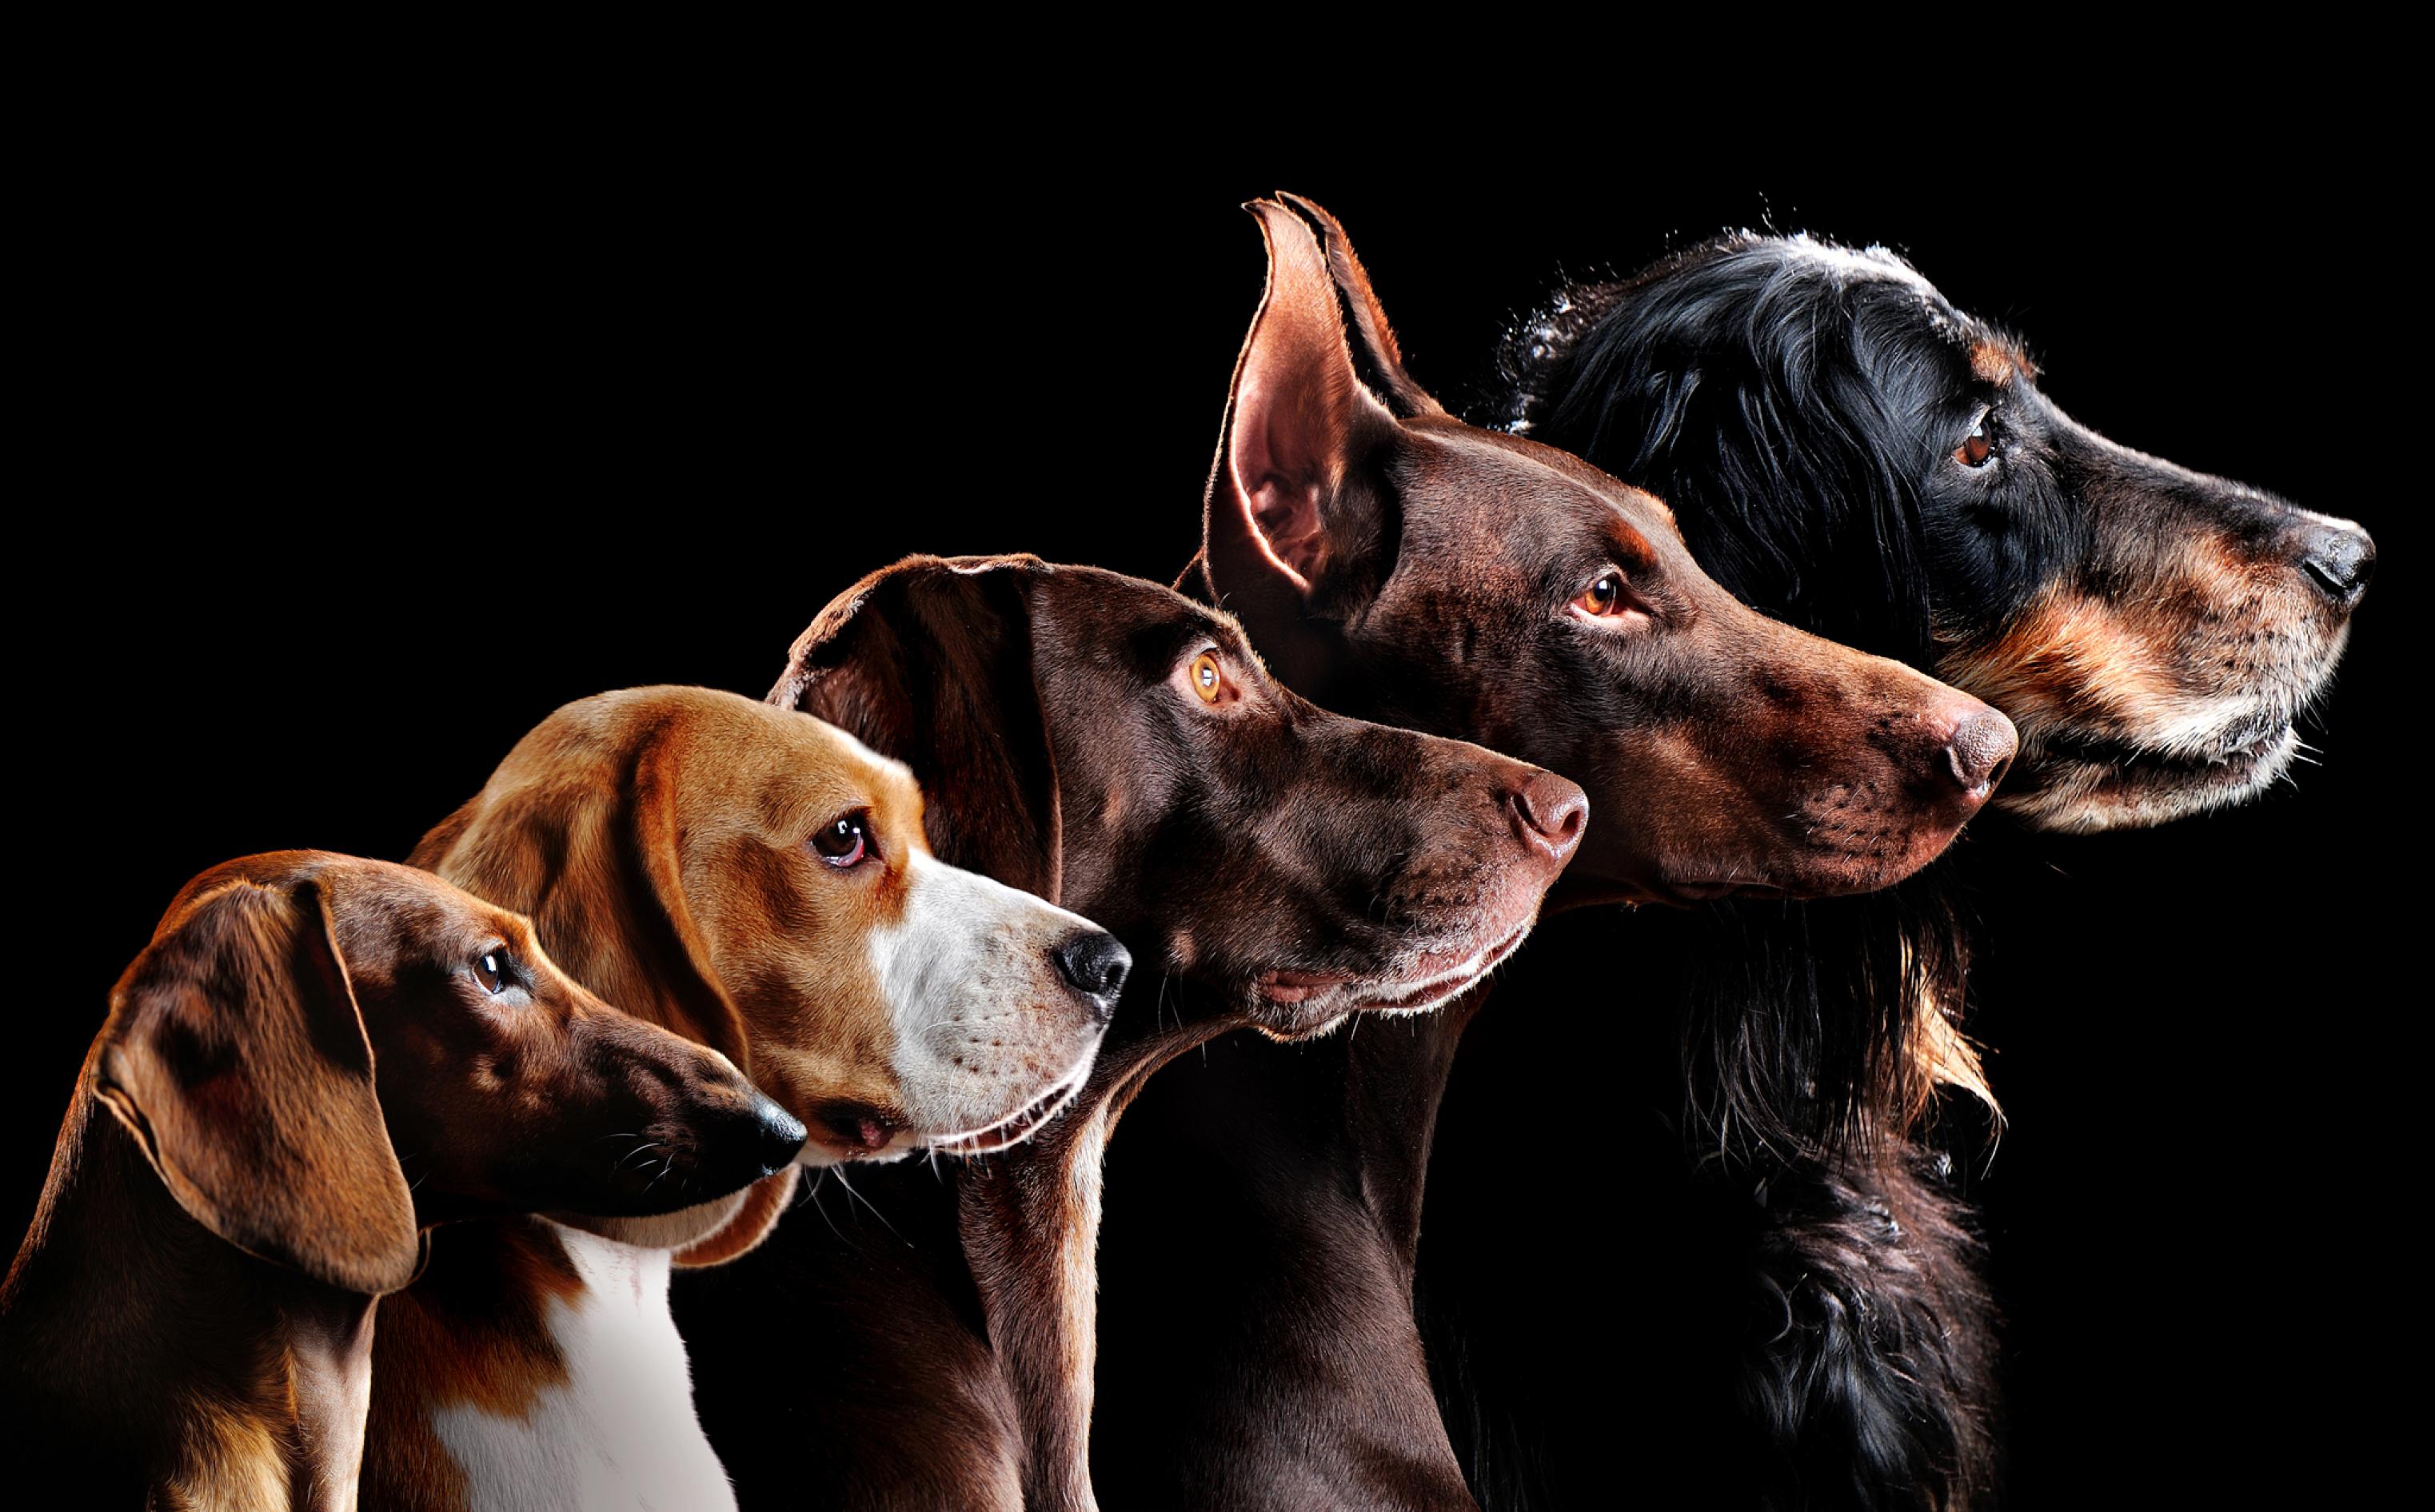 Vor schwarzem Hintergrund sind die seitlichen Oberkörper und Köpfe von fünf Hunden unterschiedlicher Rasse zu sehen, die alle auf dem Bild nach rechts schauen. Sie sind so arrangiert, dass sich der kleinste Hund links vorne befindet und der nächstgrößere jeweils dahinter und ein Stück weiter rechts platziert ist. So bilden sie ein kunstvolles, von links beleuchtetes Ensemble der Rassenvielfalt.